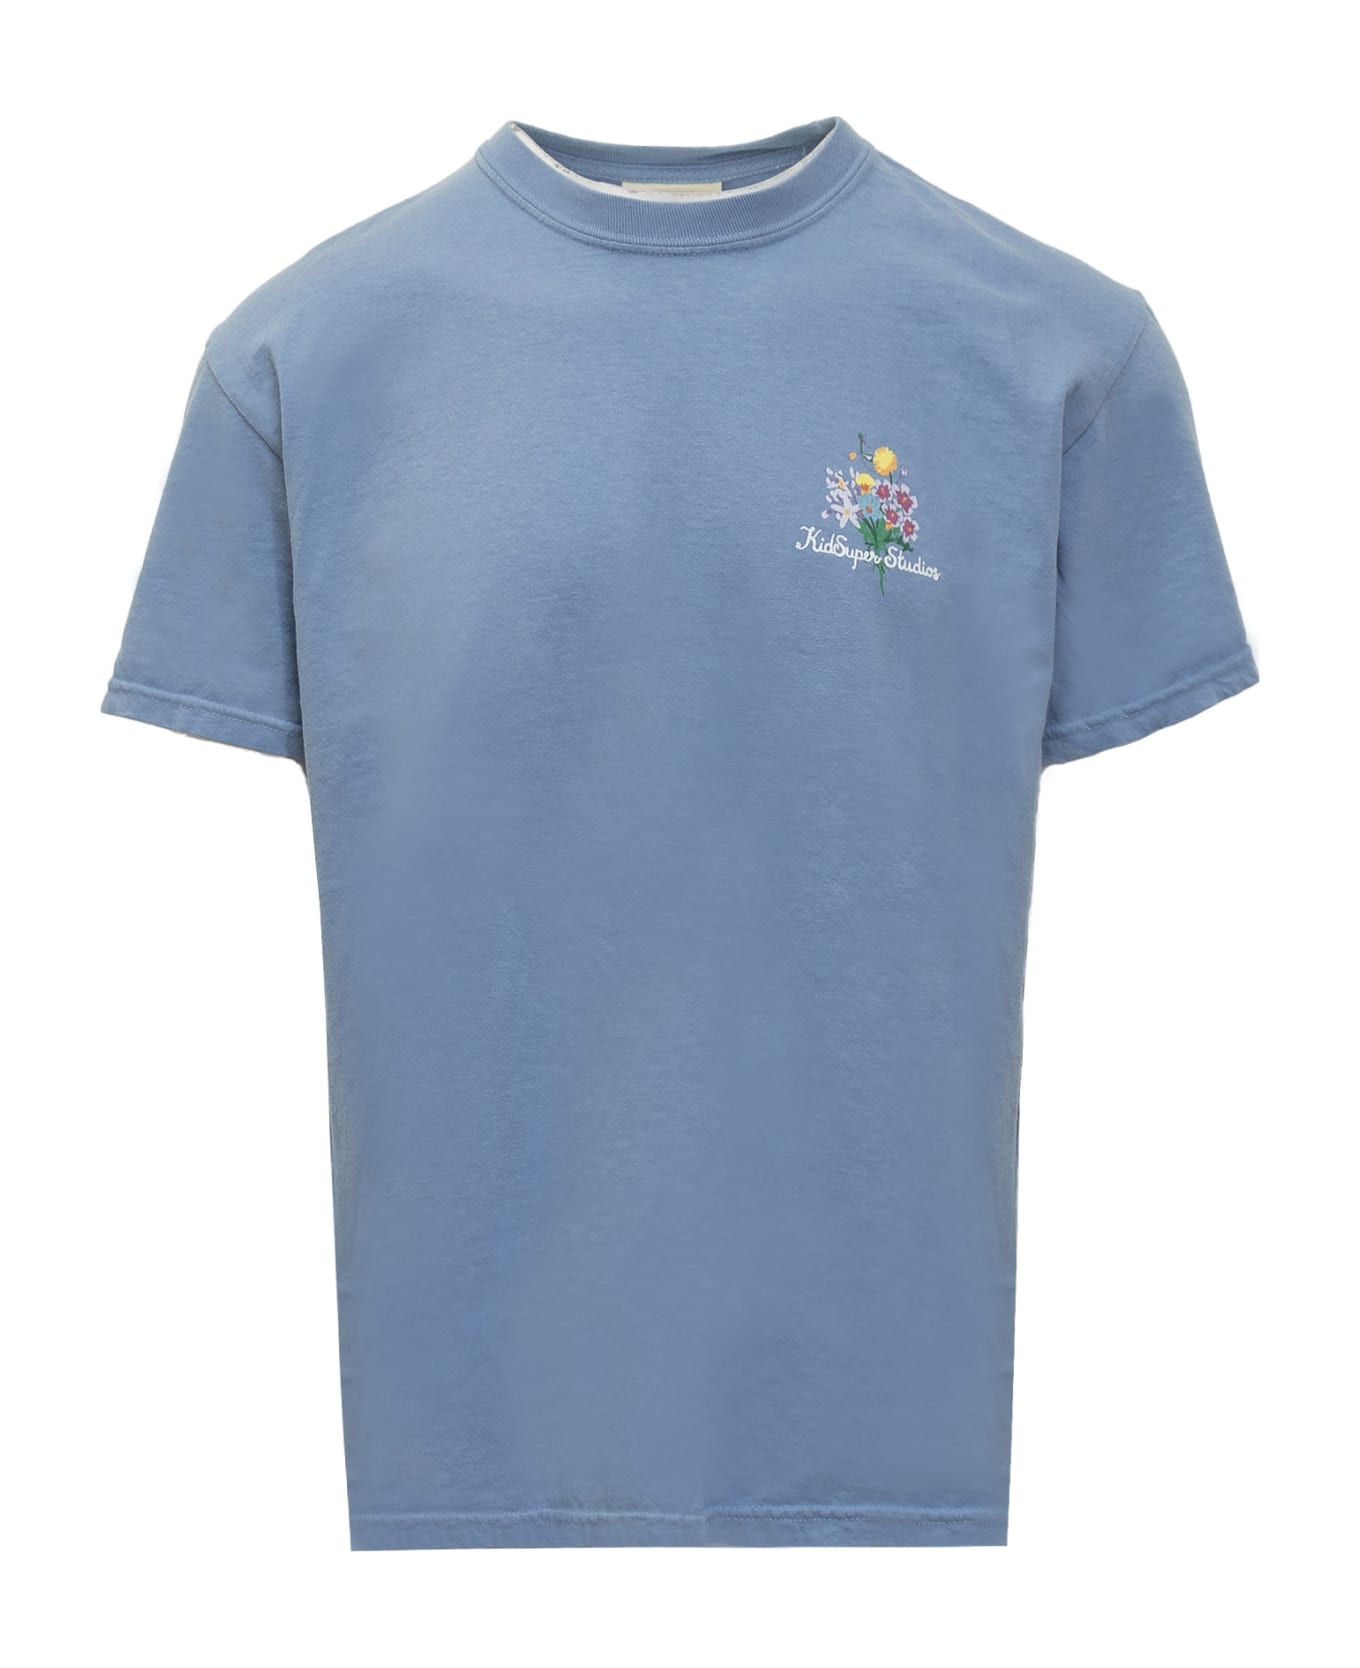 Kidsuper Growing Ideas T-shirt - BLUE